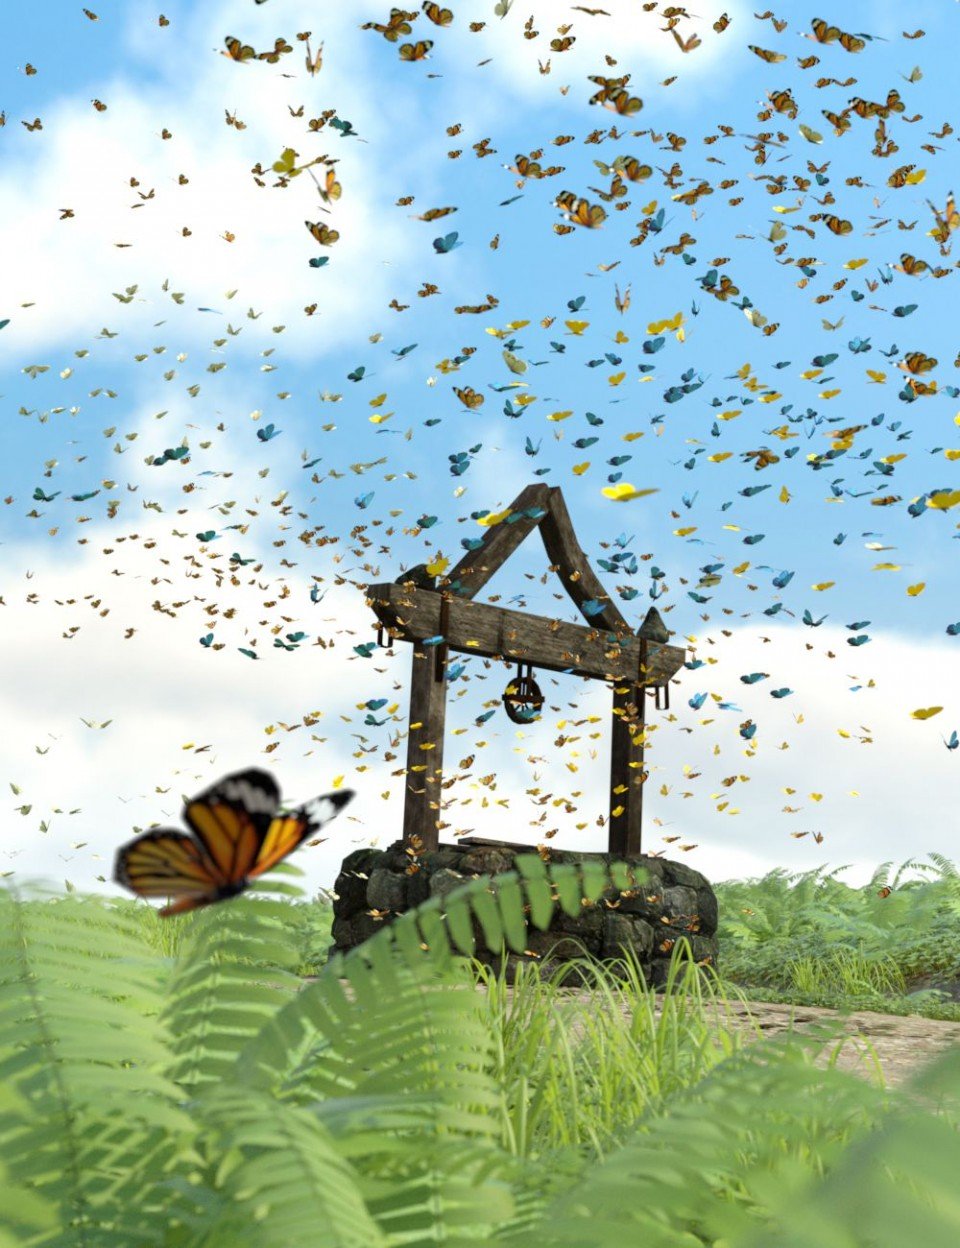 The Flock Butterflies_DAZ3D下载站